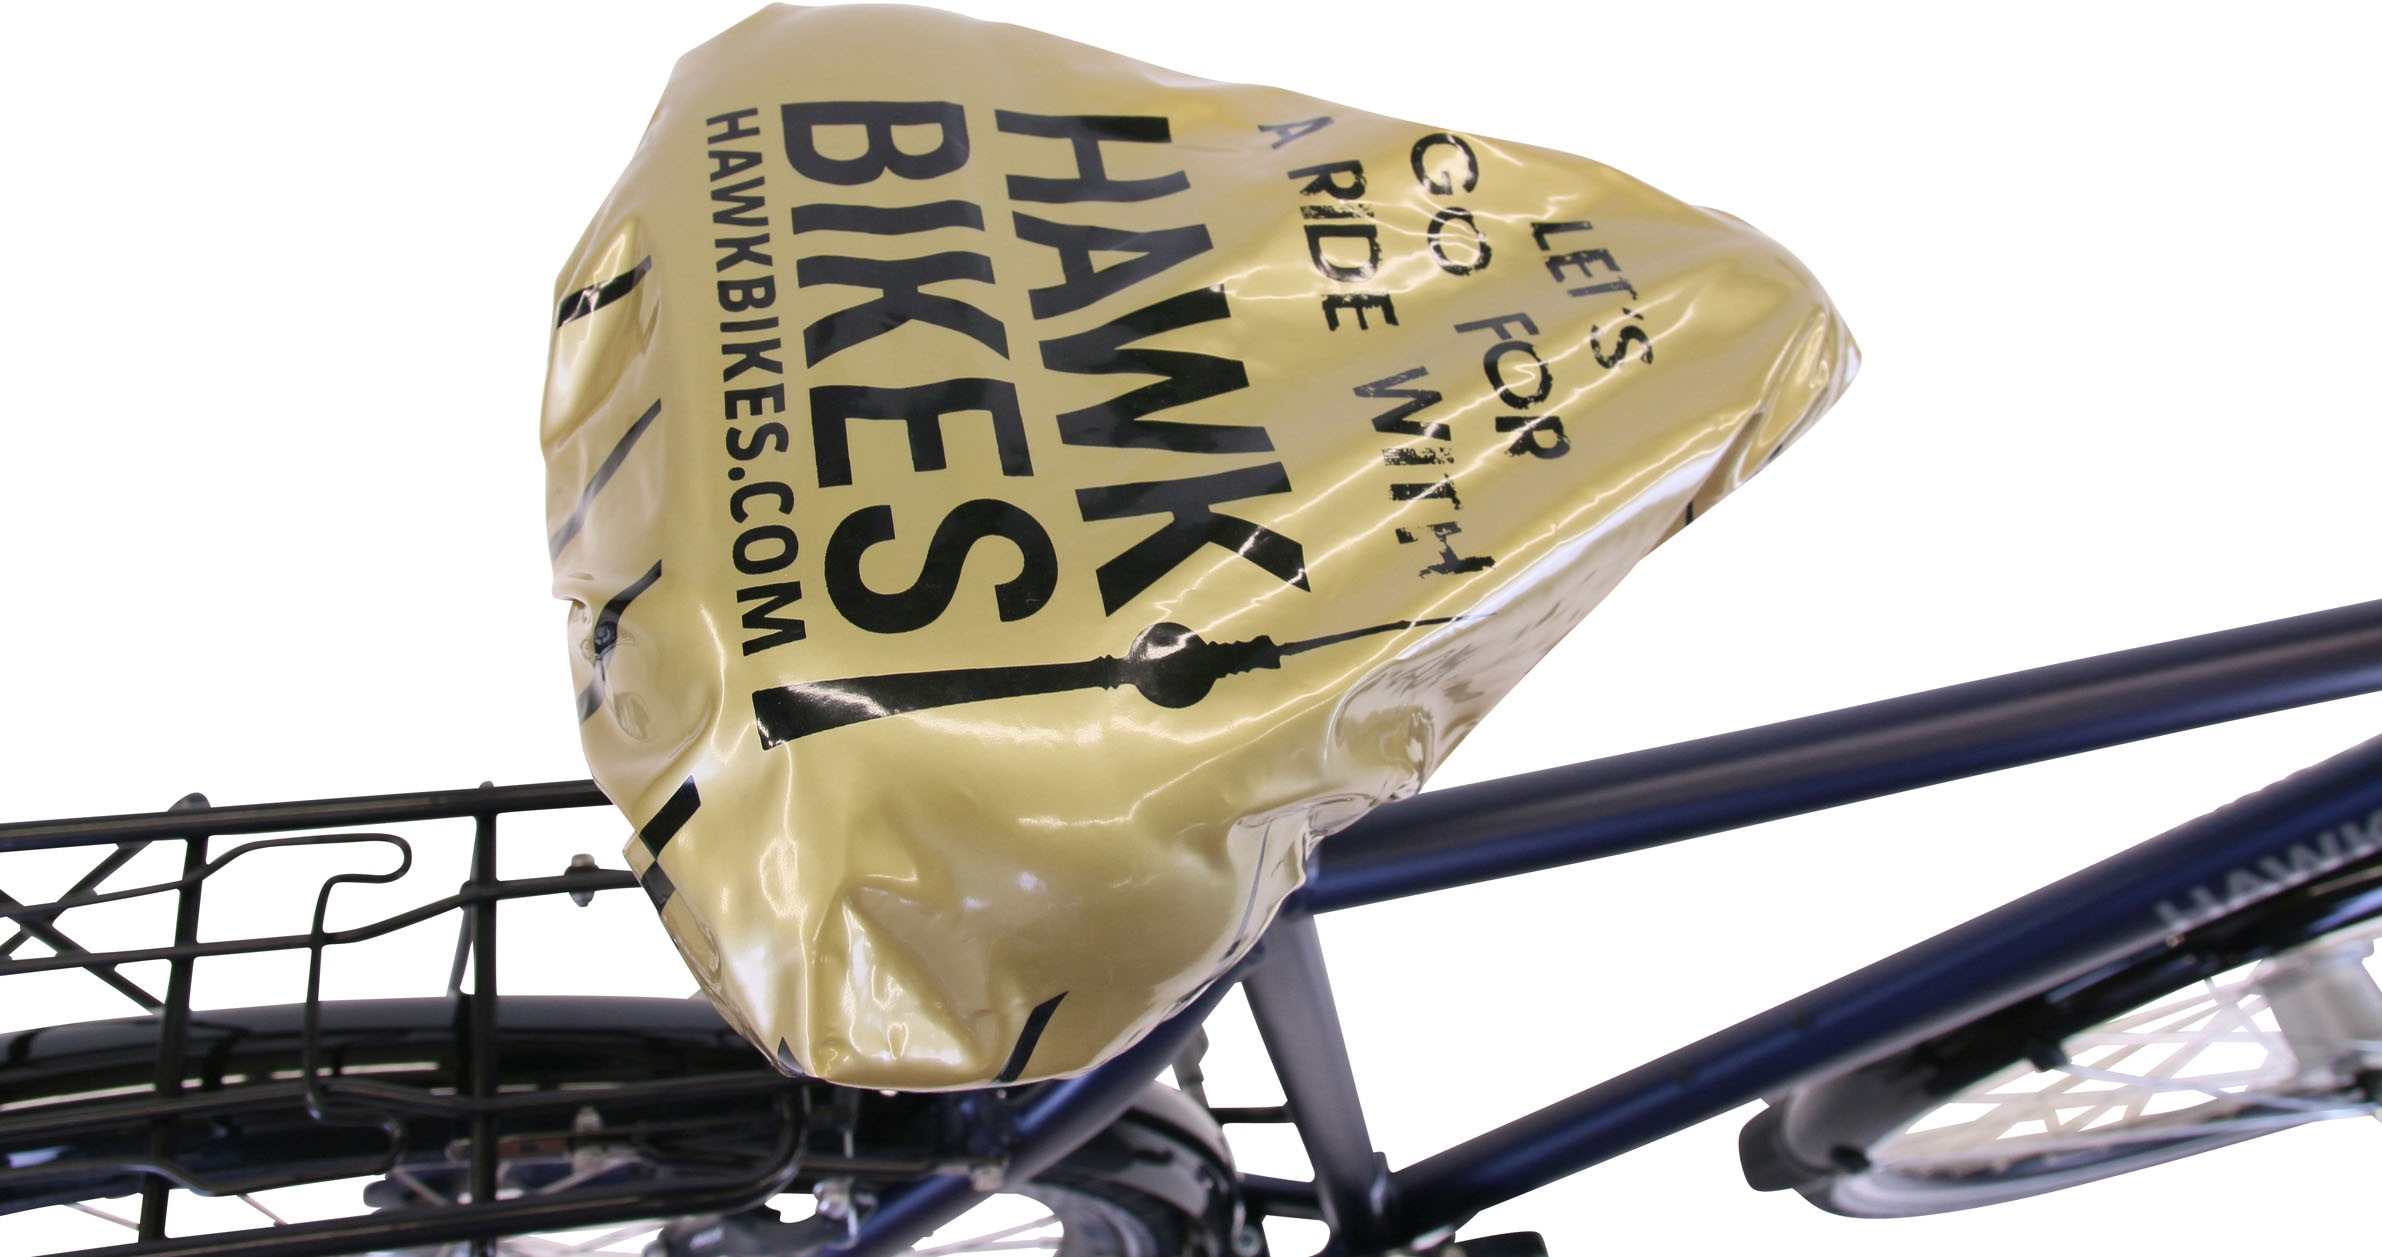 HAWK Bikes Cityrad »Gent Deluxe«, 7 Gang, Shimano, Nabenschaltung